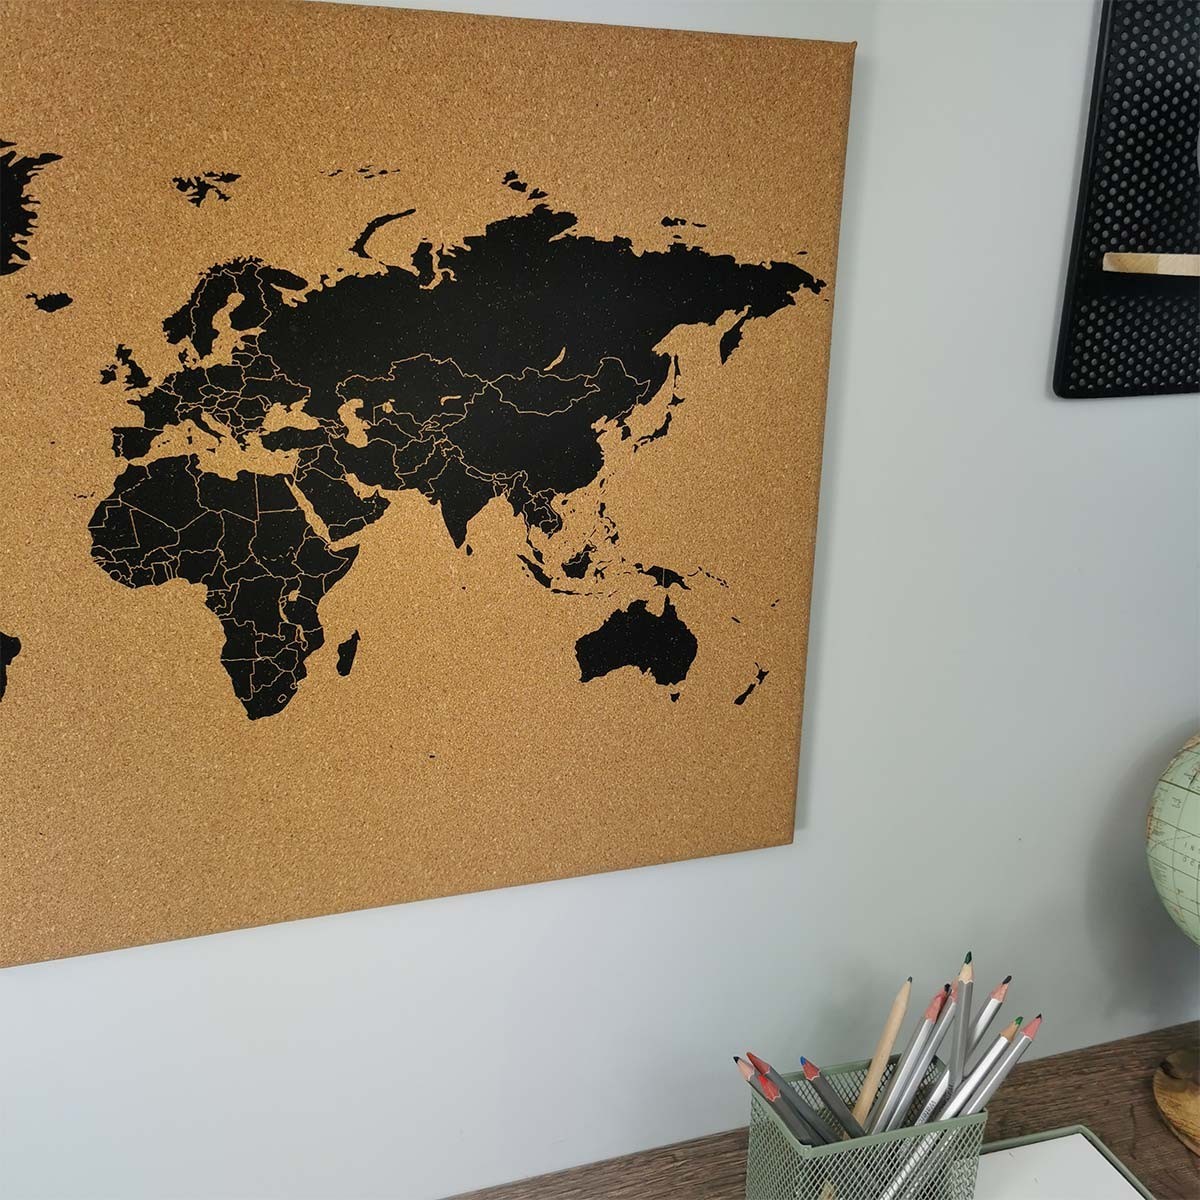 Tableau en Liège Carte du Monde - Amber World